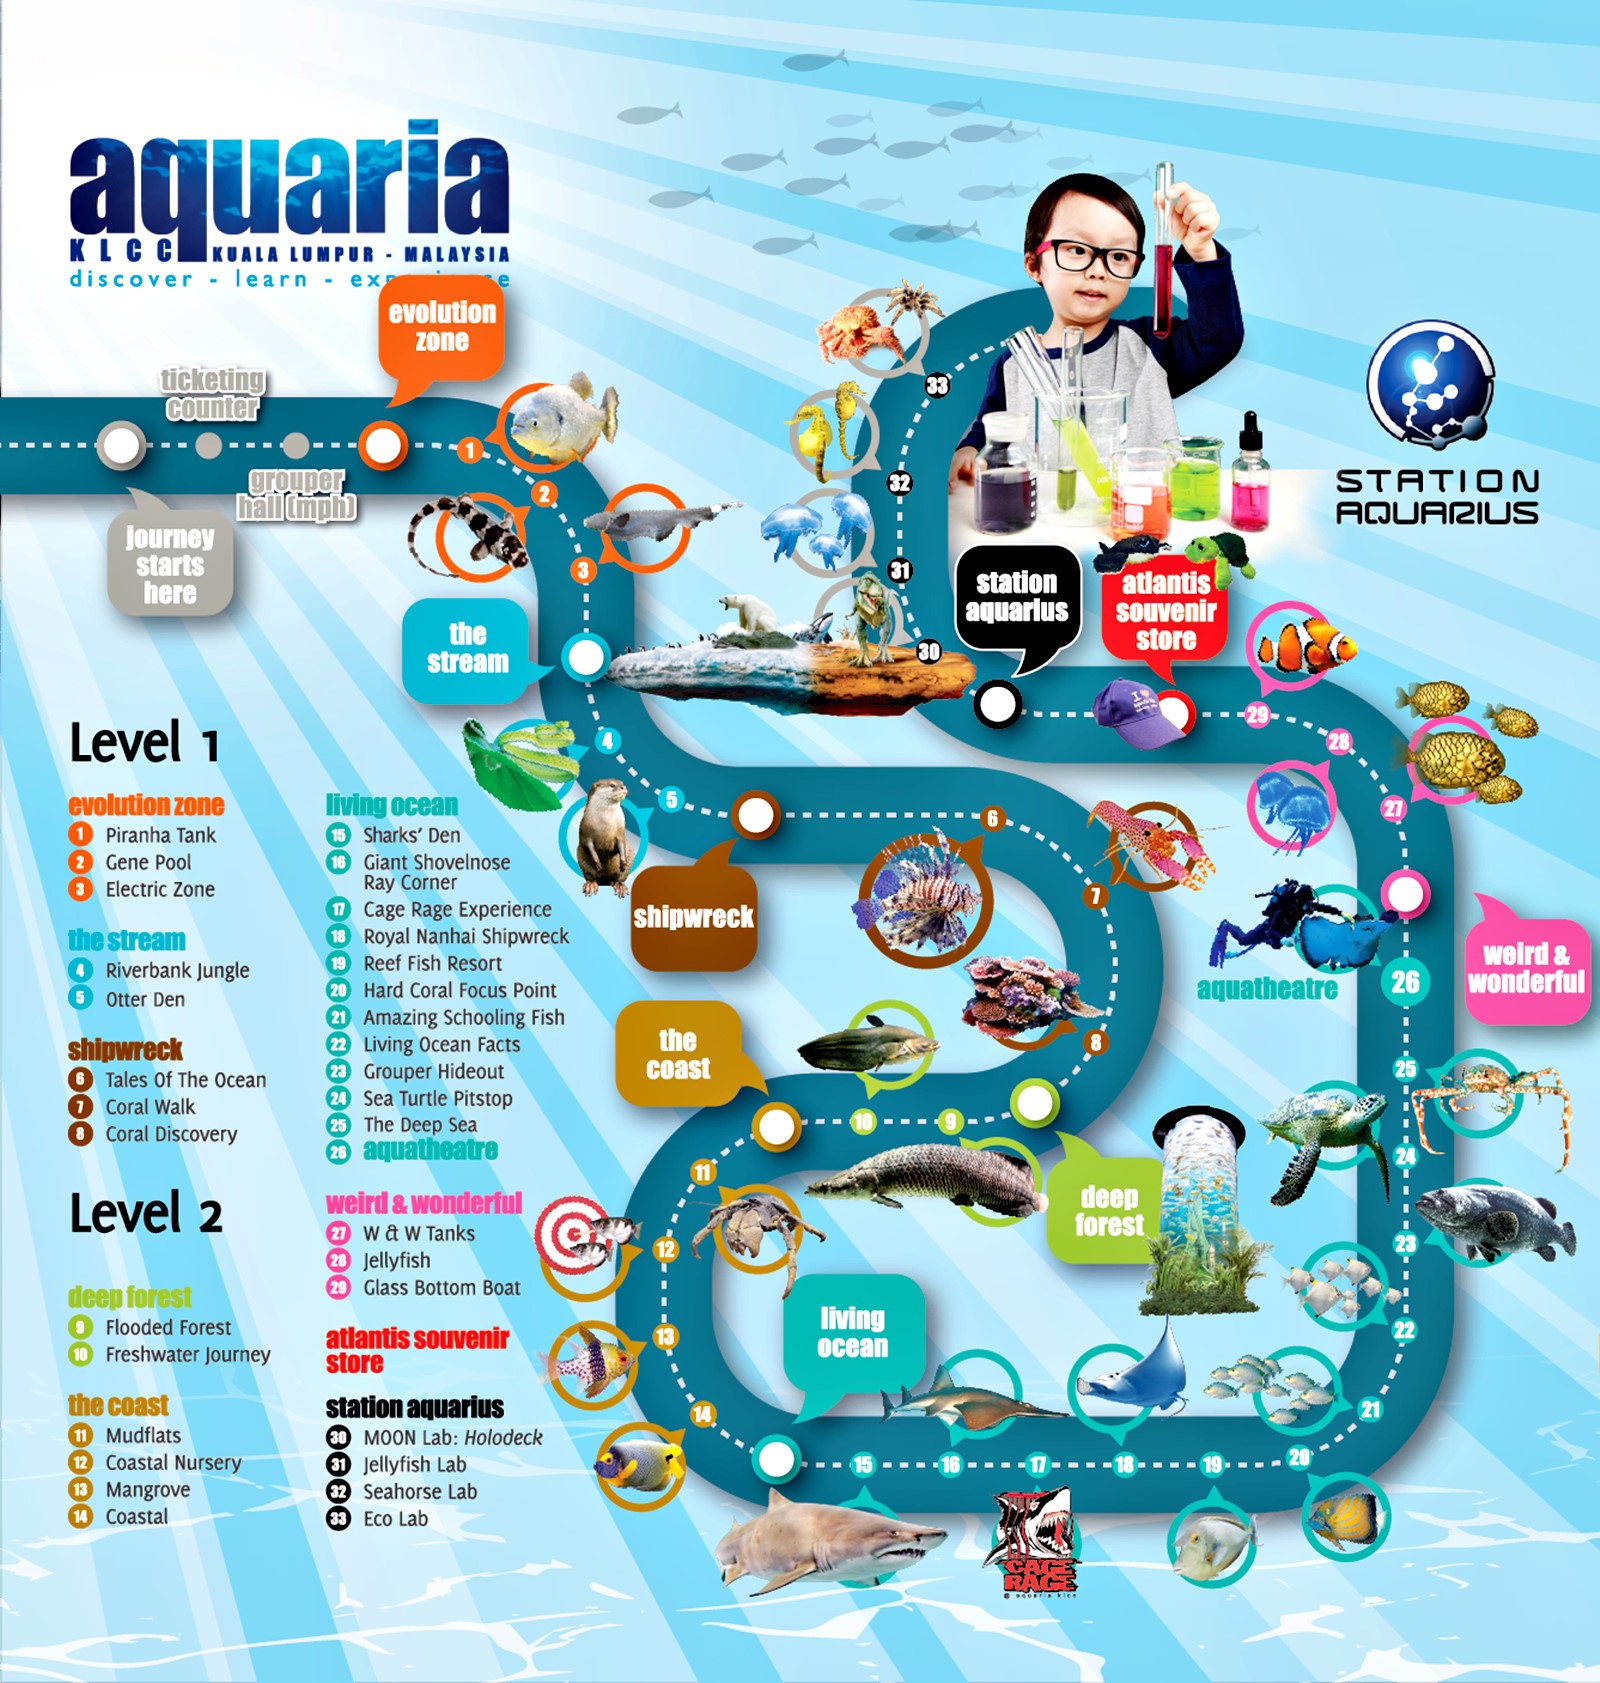 aquaria klcc maps